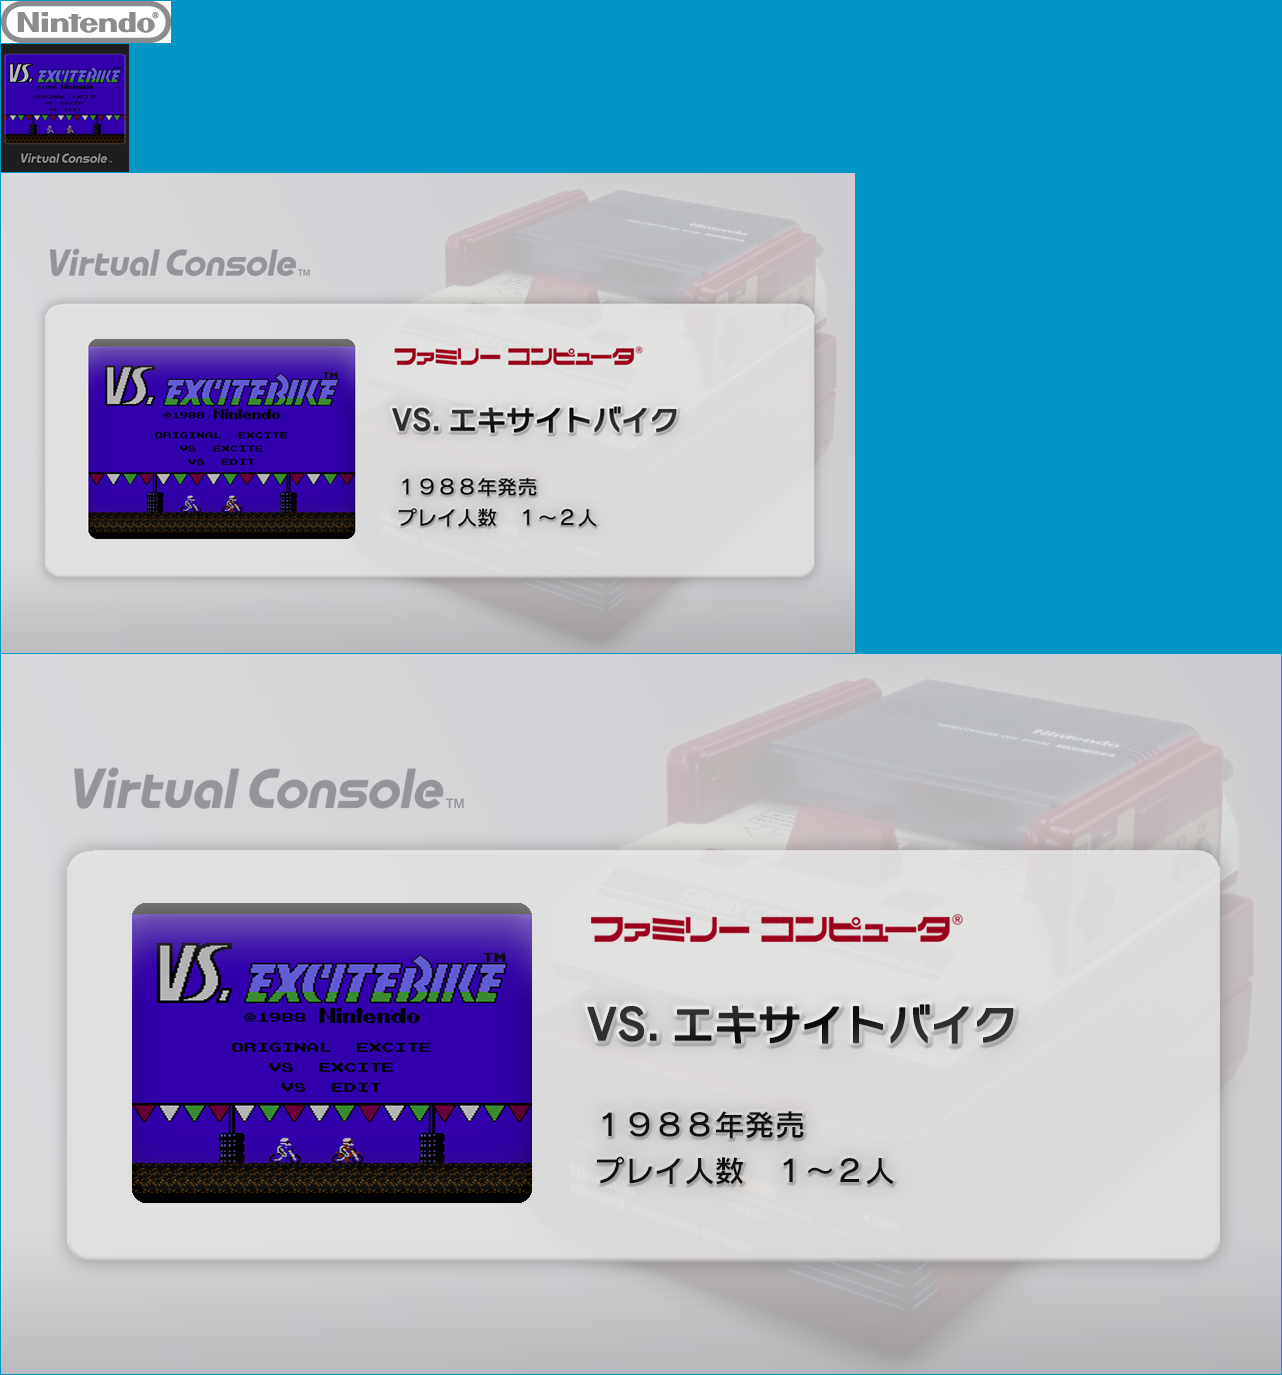 Virtual Console - VS. Excitebike